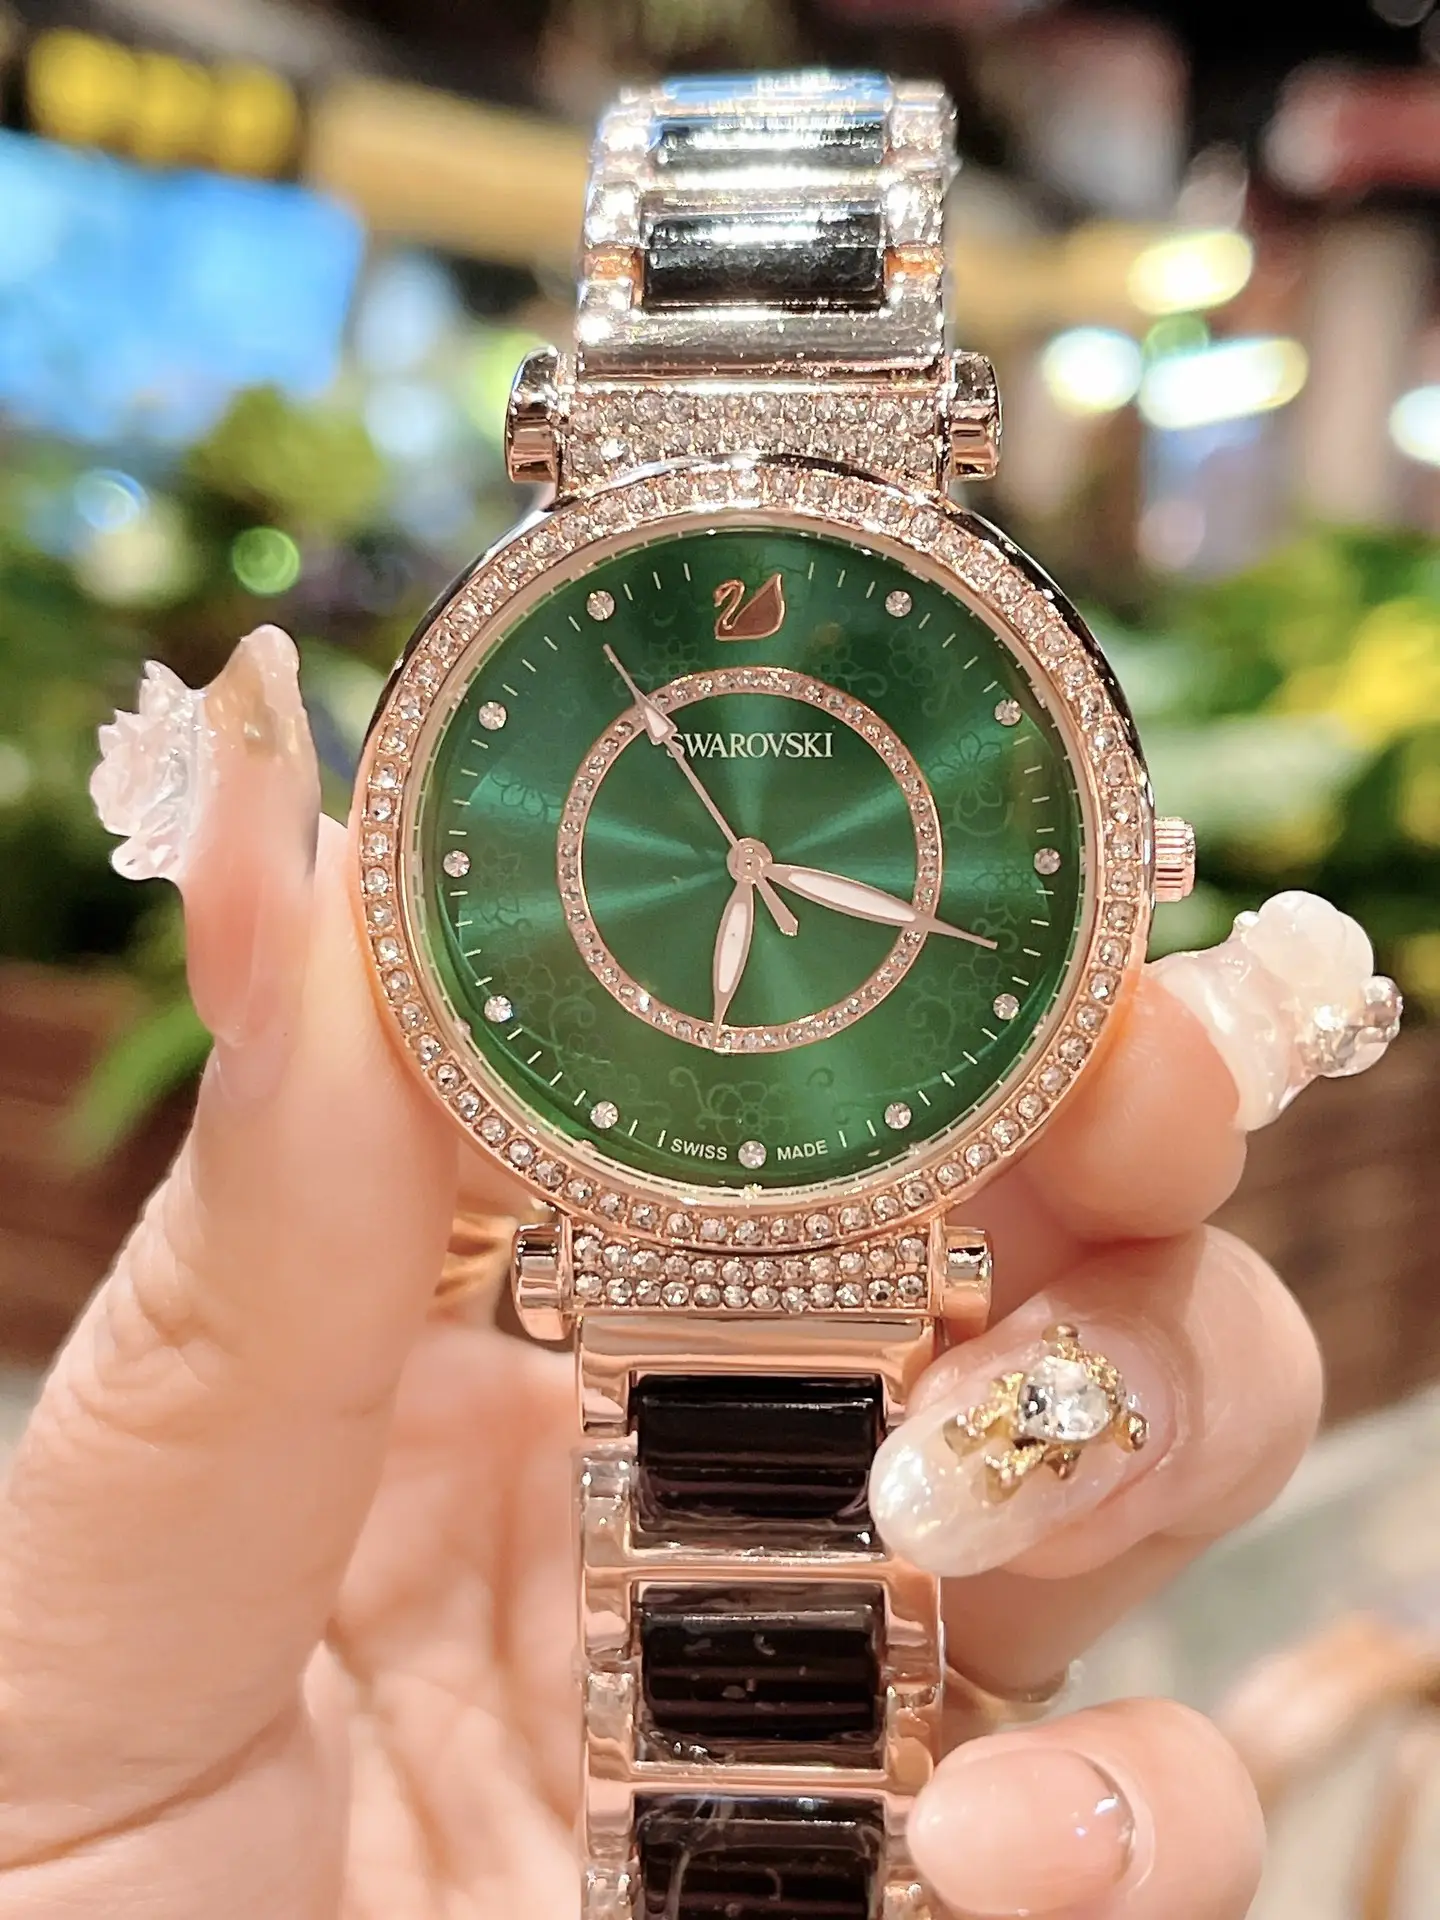 レディース腕時計😀 | ハイエンドカスタム潮牌店が投稿したフォト